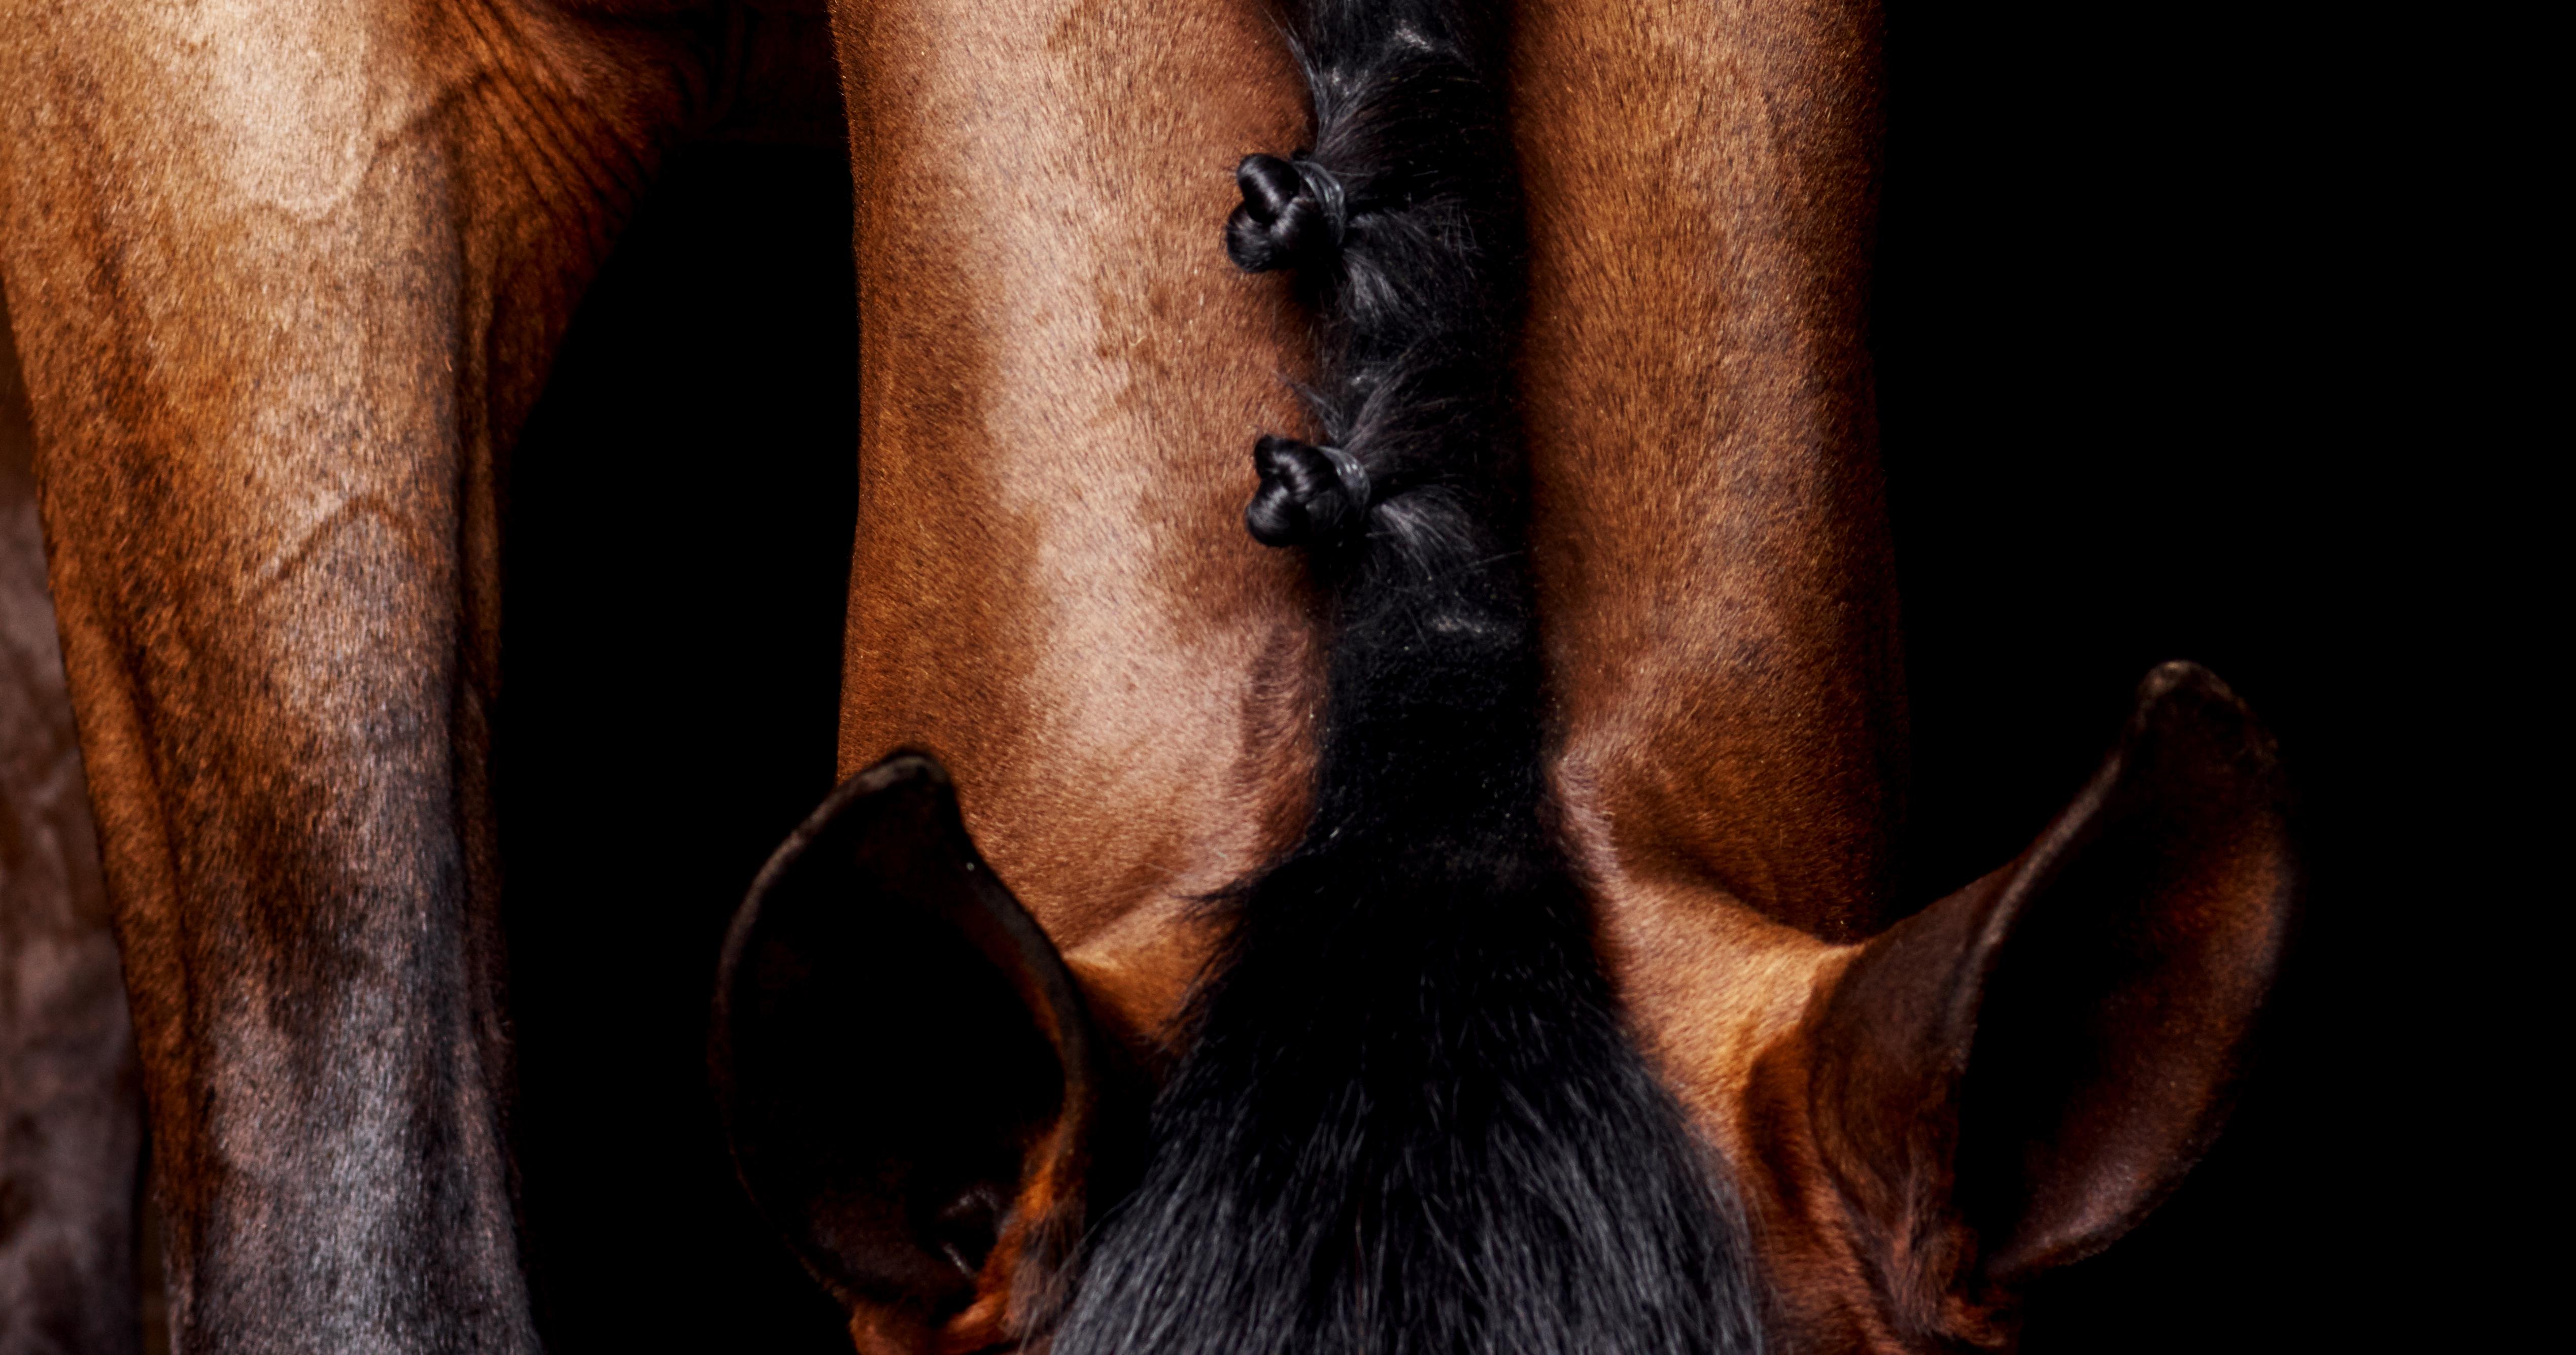 Lamerick-Hals  2015 von Juan Lamarca
Hochwertiges archivfestes Baumwollpapier
Bildgröße: 40 x 30 Zoll
Ausgabe 1 von 10 plus 2 AP
Ungerahmt

Die Horse Series von Juan Lamarca ist eine abstrakte Sammlung von Fotografien, die Hochleistungspferde